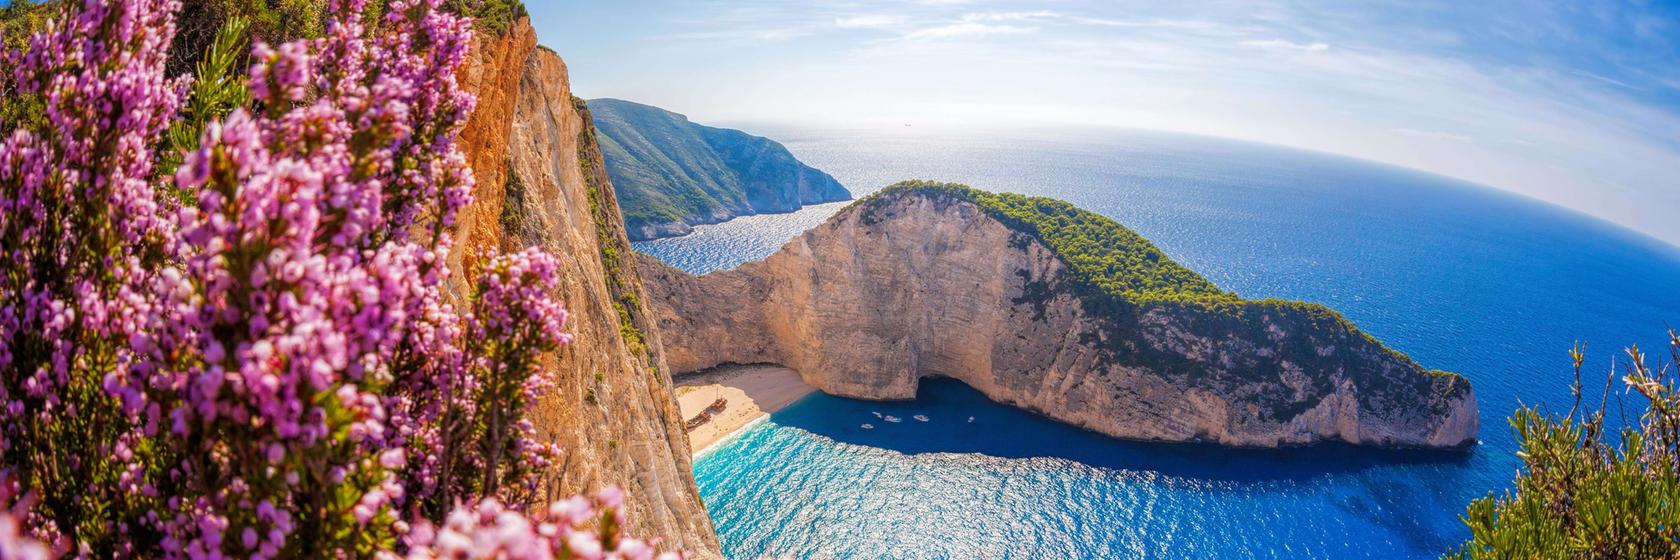 Co si  nezapomenout vzít s sebou Do Řecka